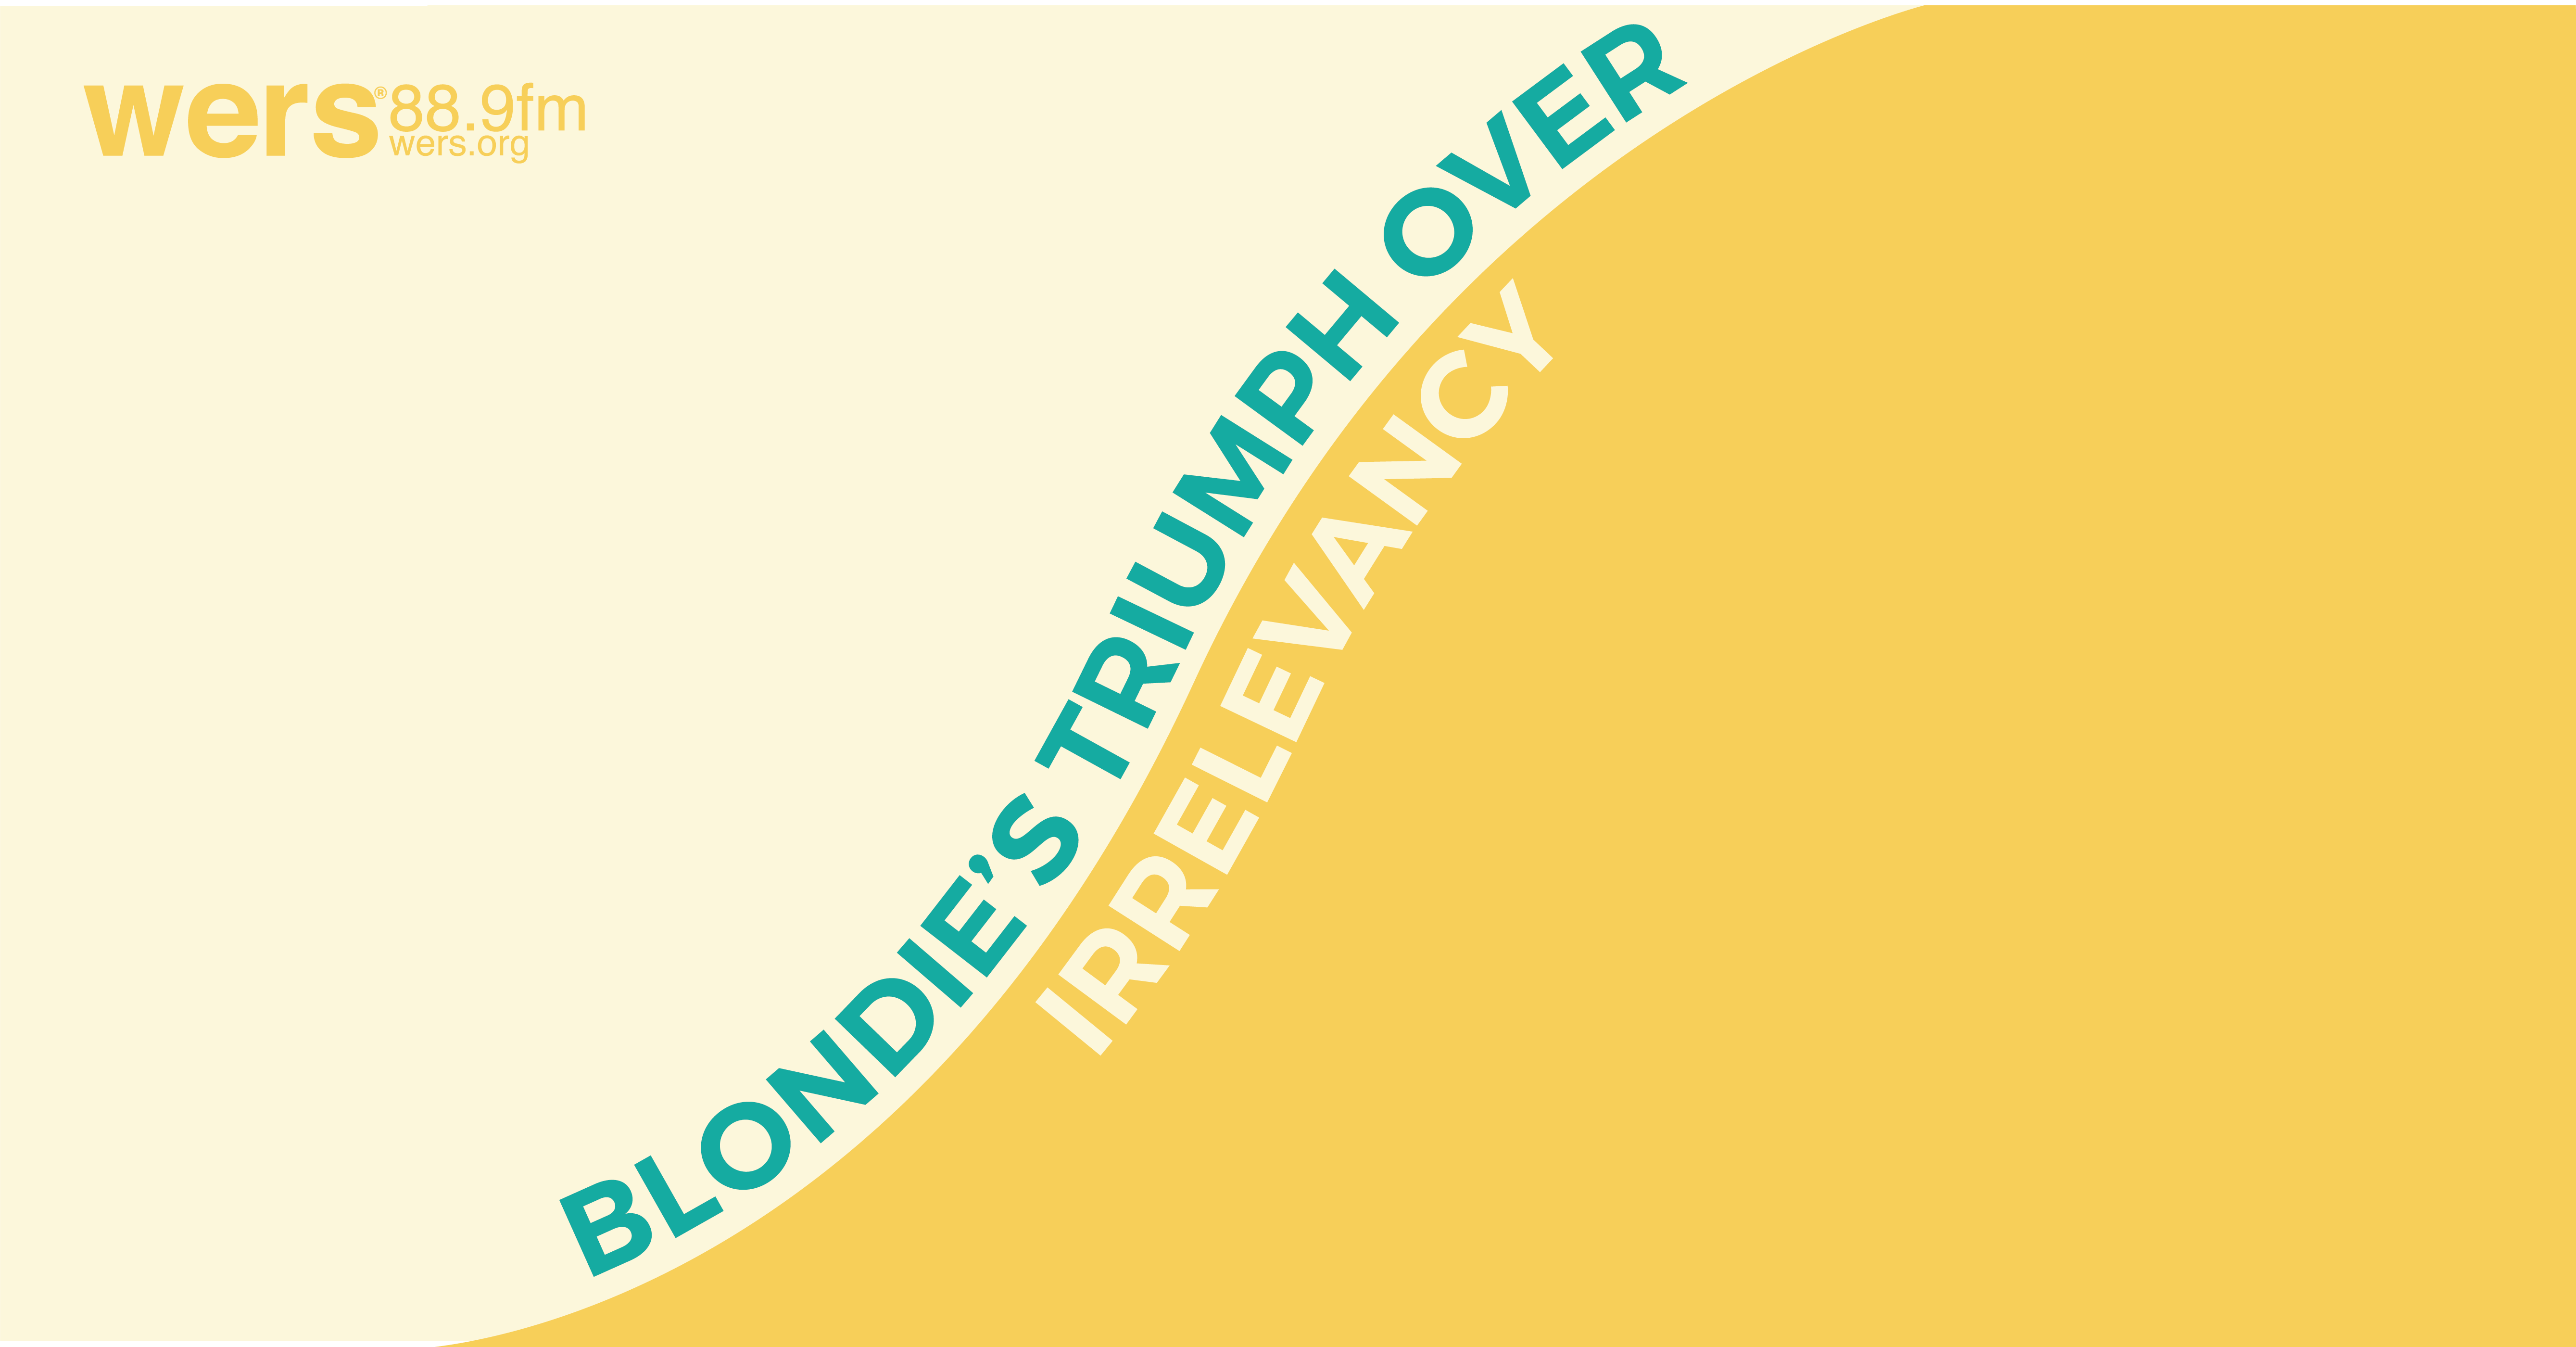 blondie-02